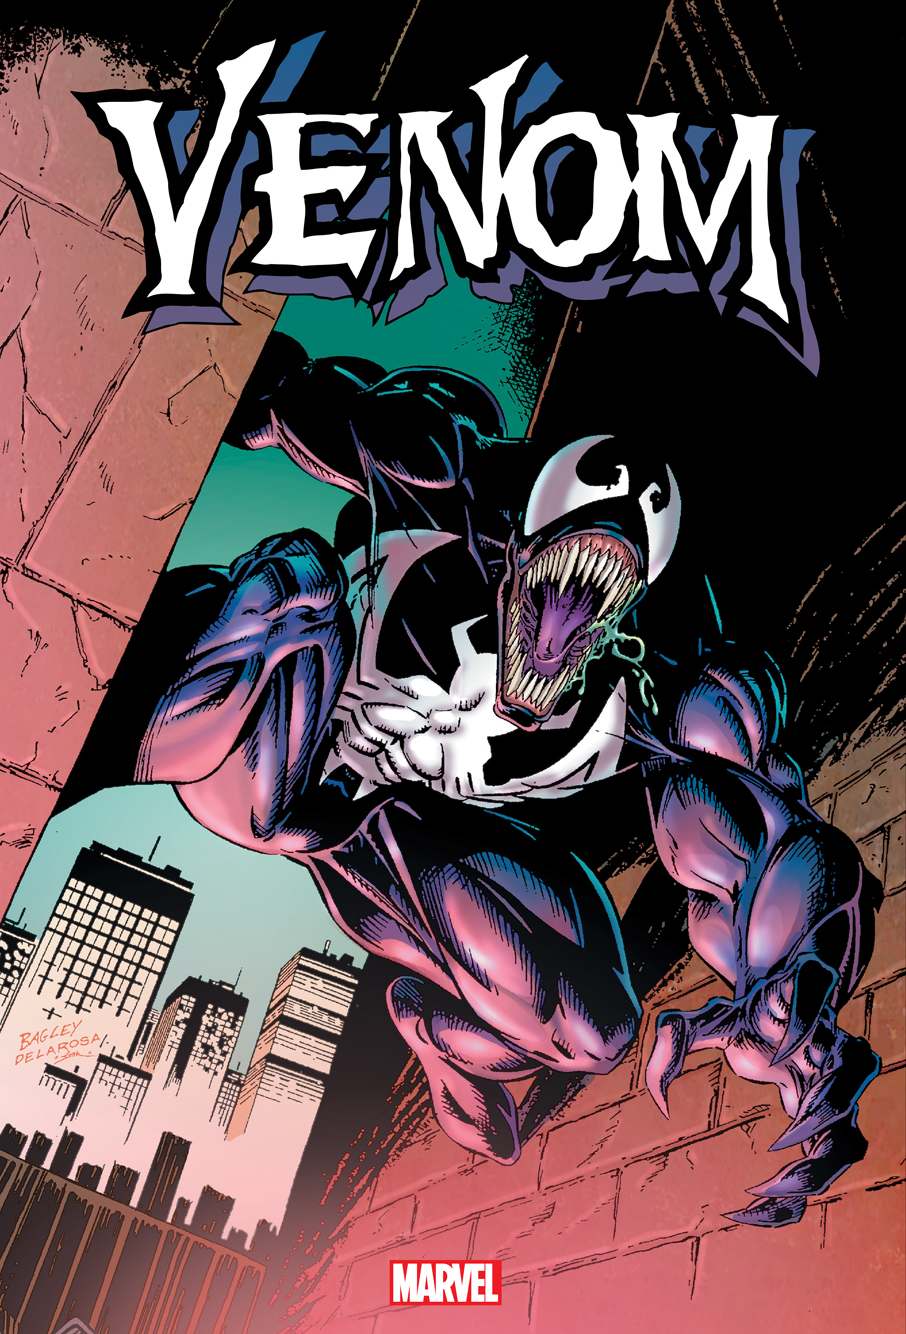 Venom Omnibus Venomnibus Hardcover Volume 1 Bagley Cover (2021 Printing)